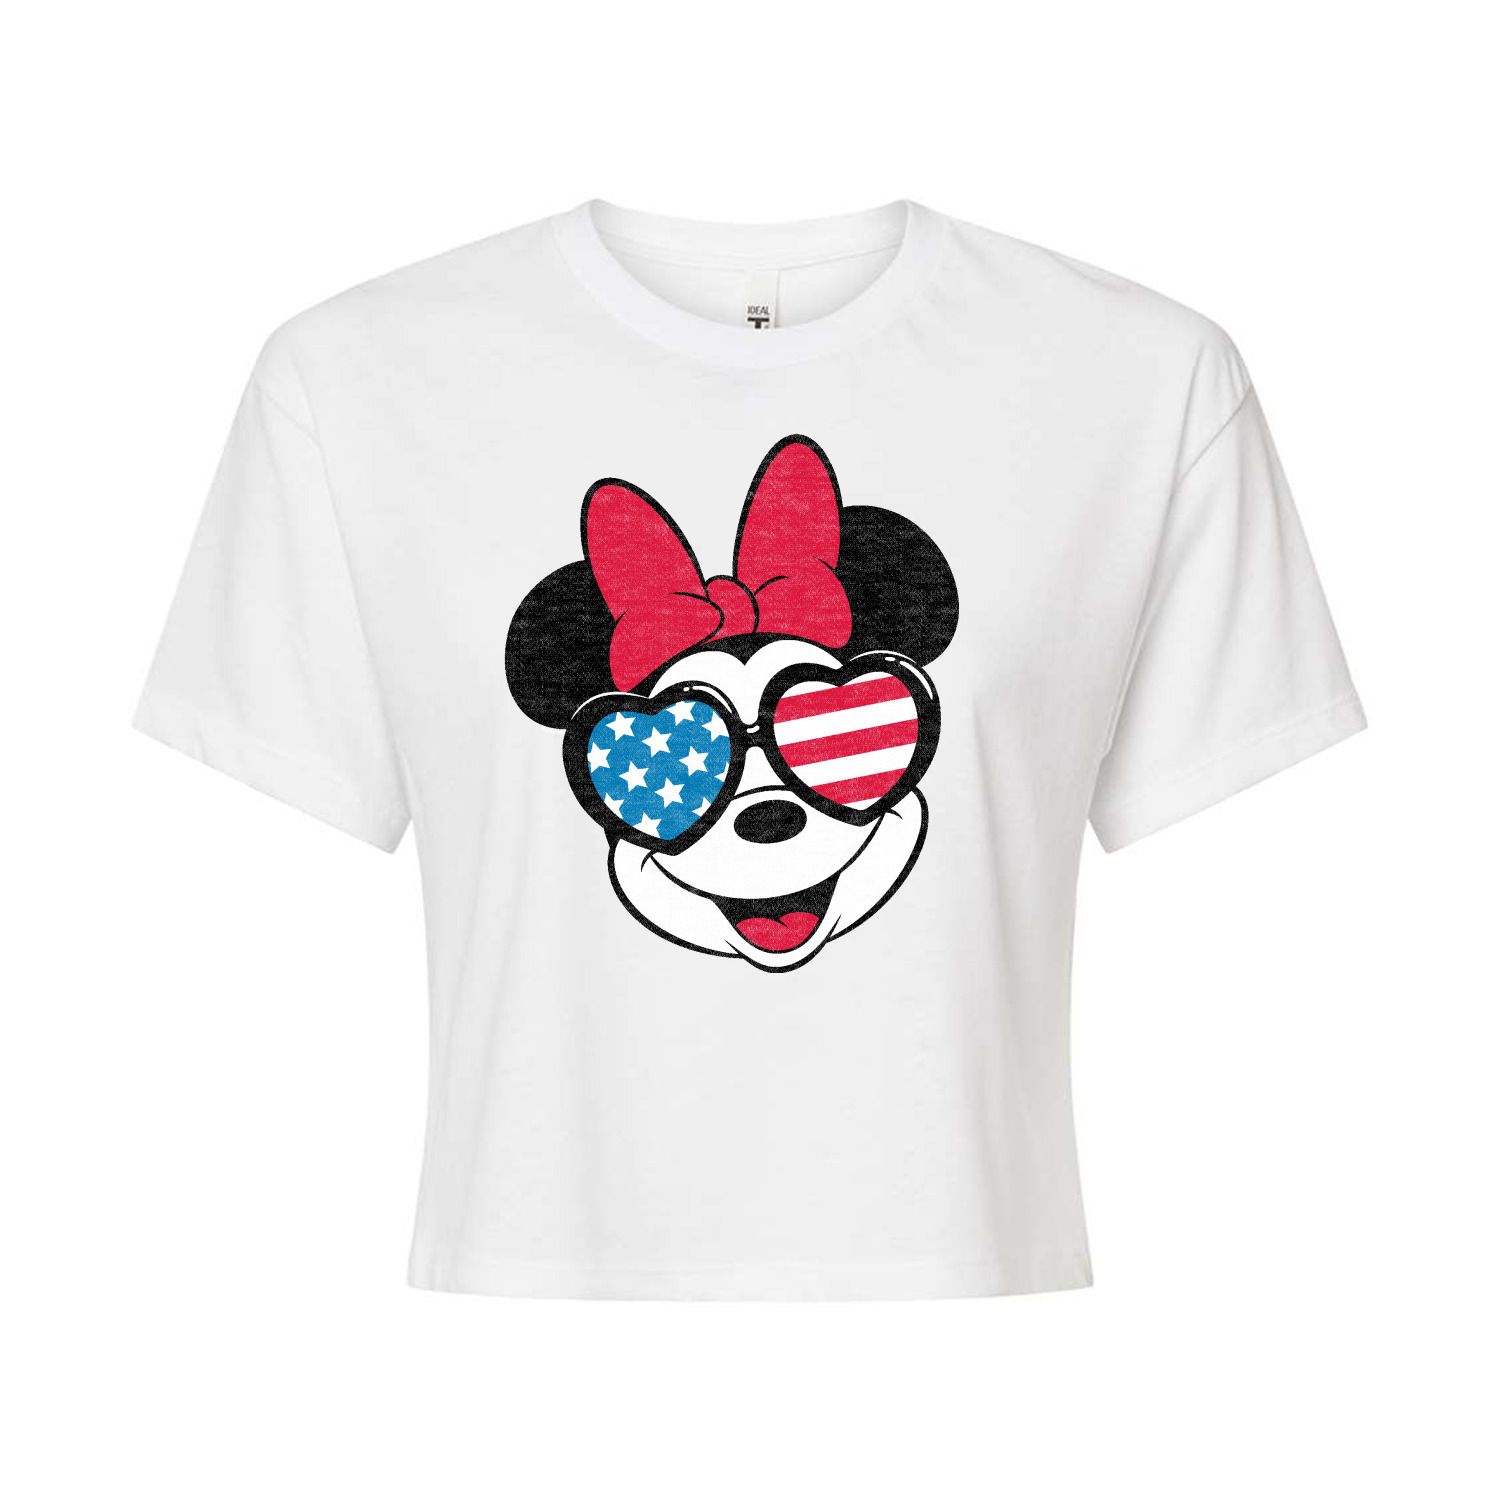 Укороченная футболка с очками и очками с флагом Disney's Minnie Mouse для детей Disney